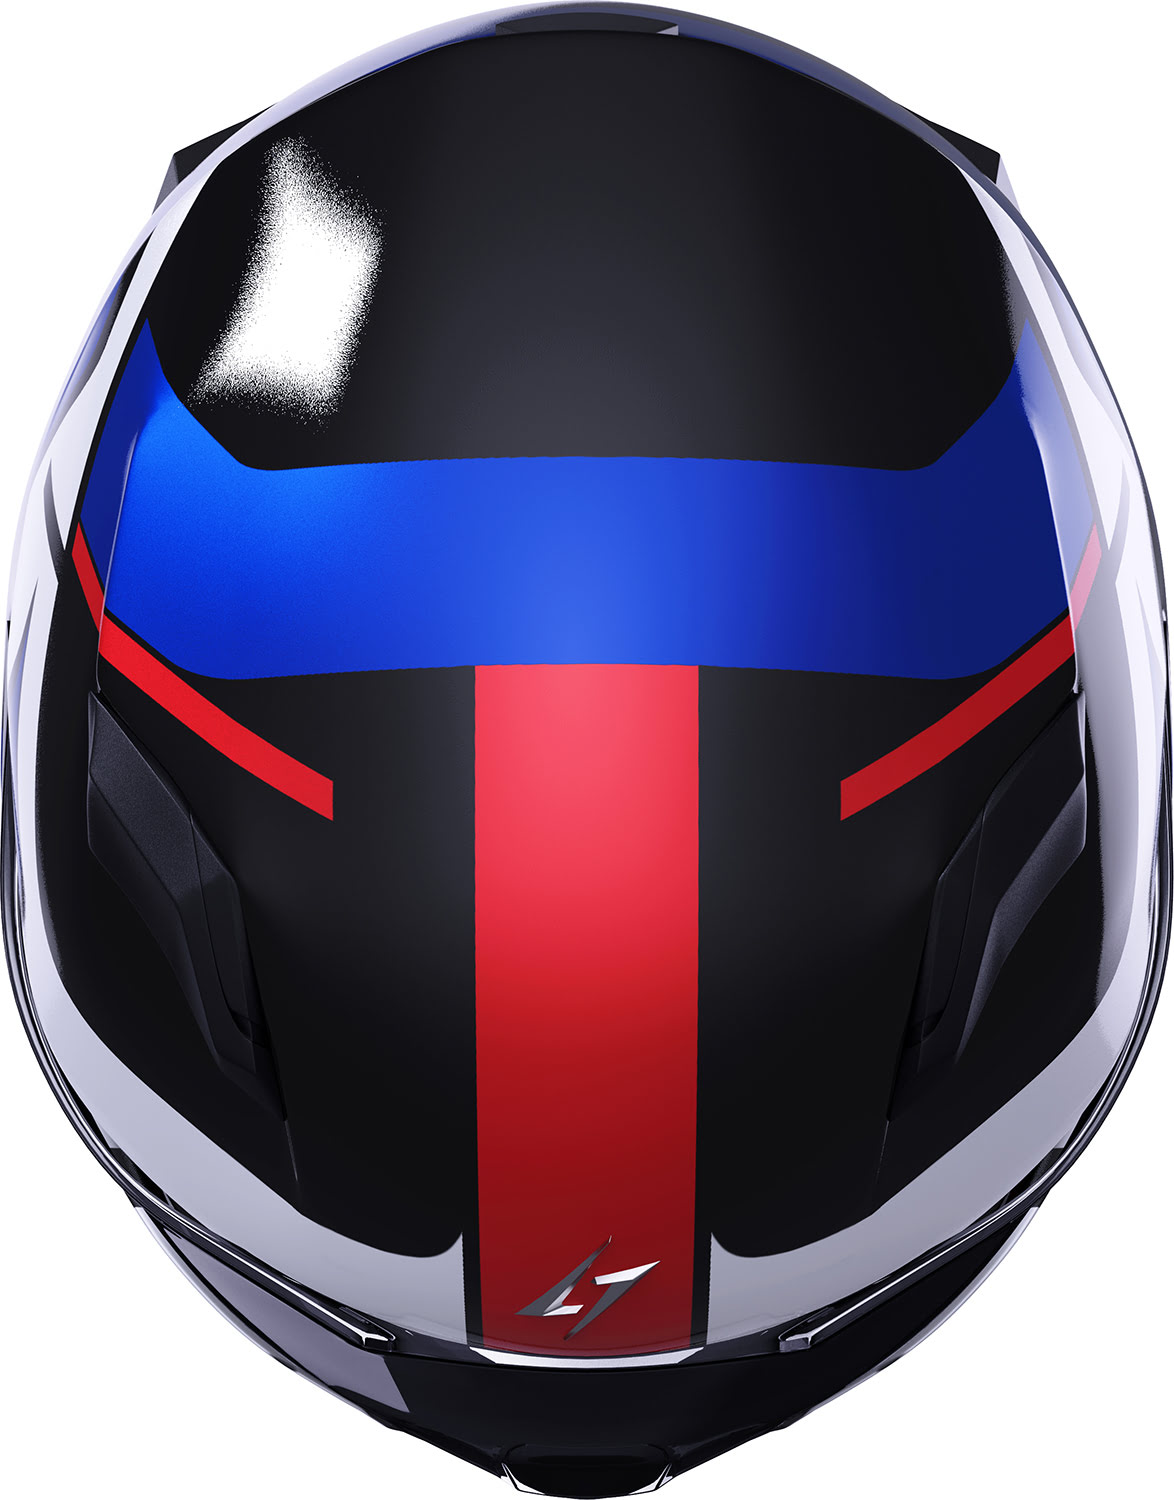 Helmet WISE RUNNER Blue / Red / White Pearly STORMER 